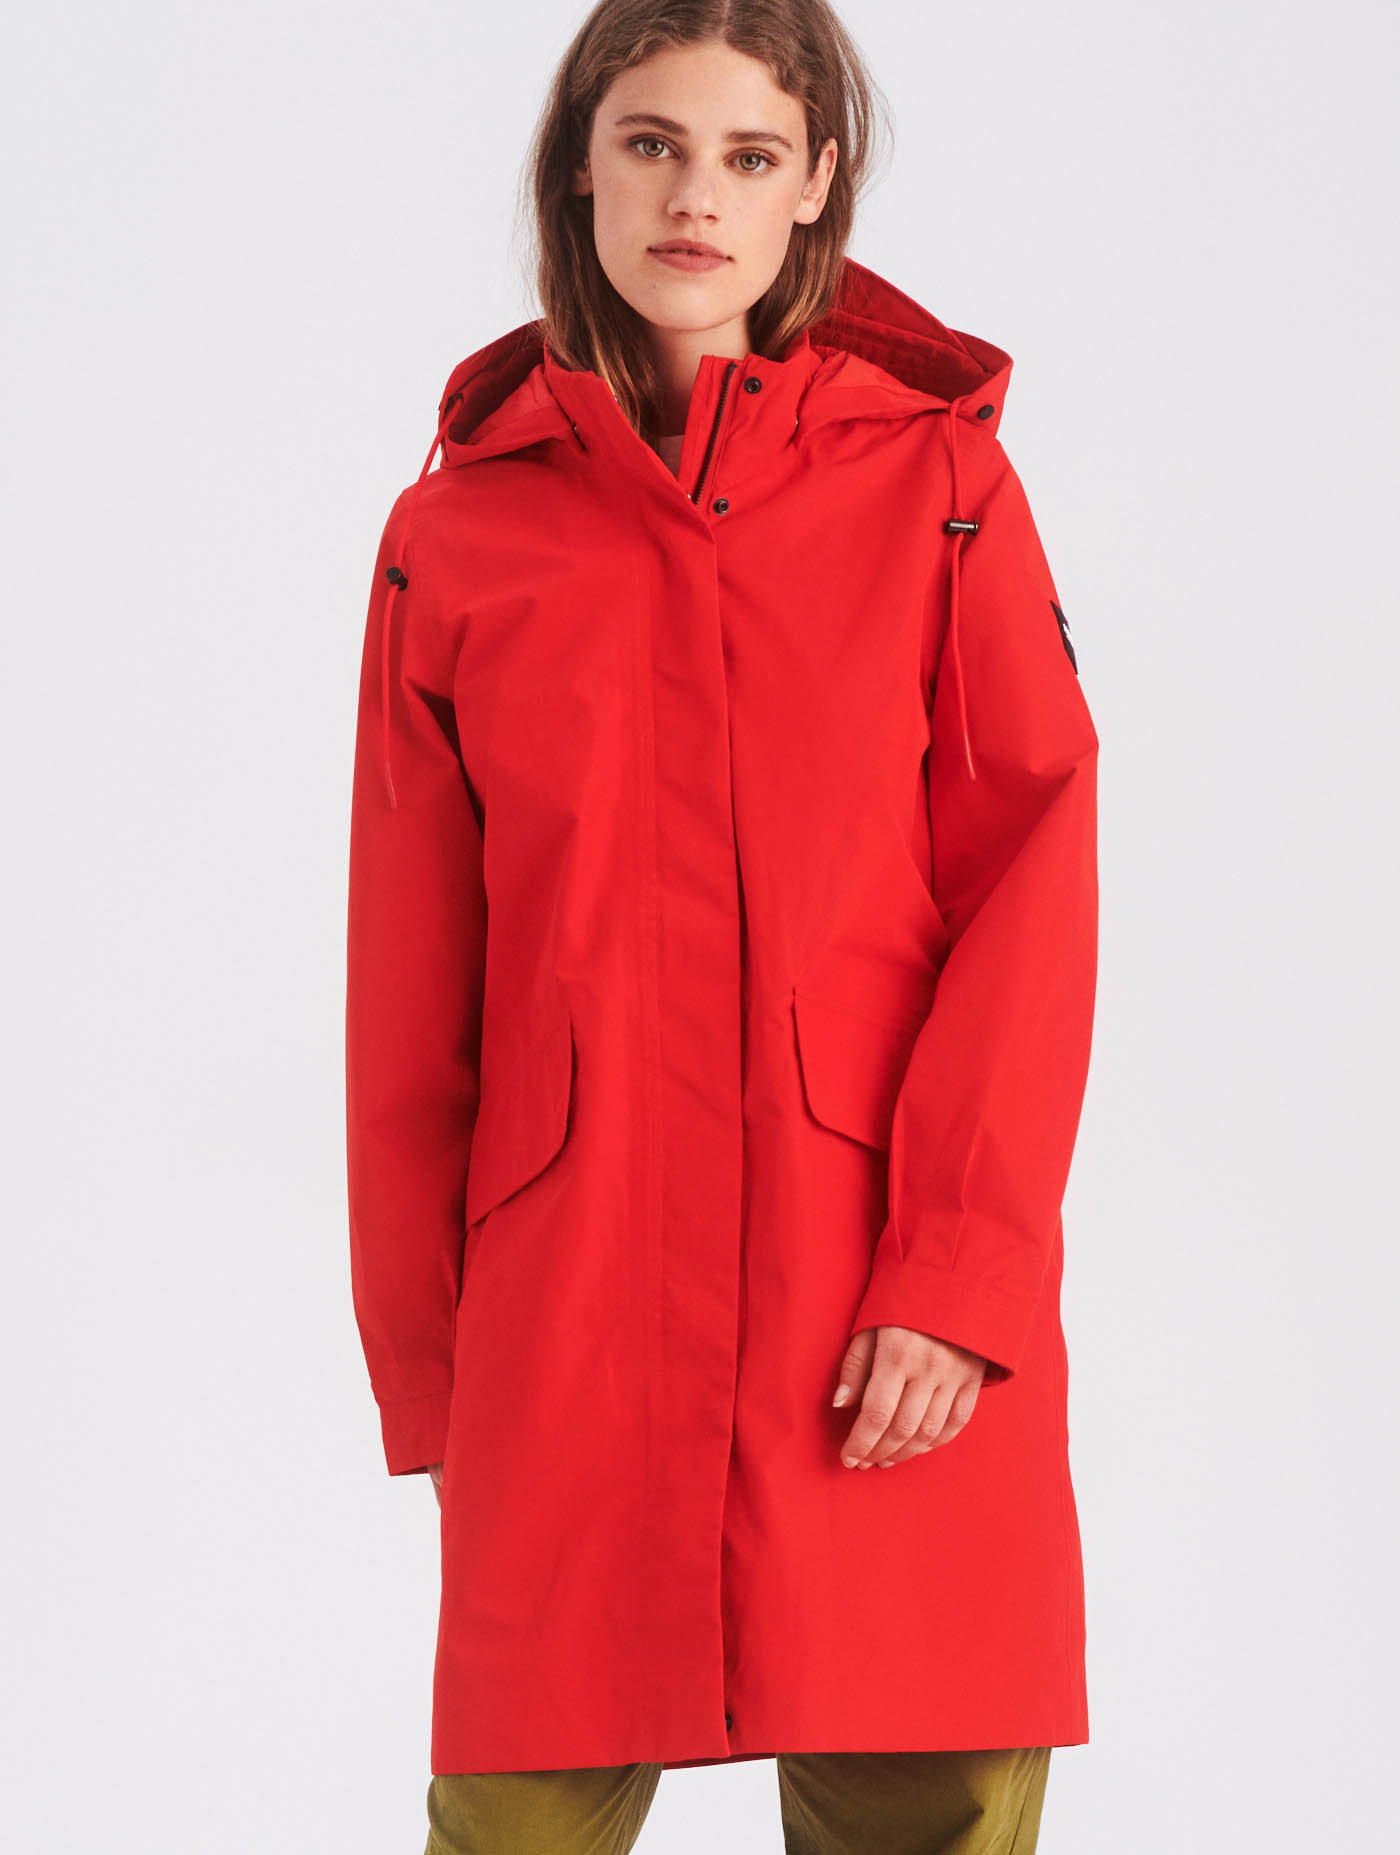 Coats Jackets Parka Trench Coat, Waterproof Mac Trench Coat Hood